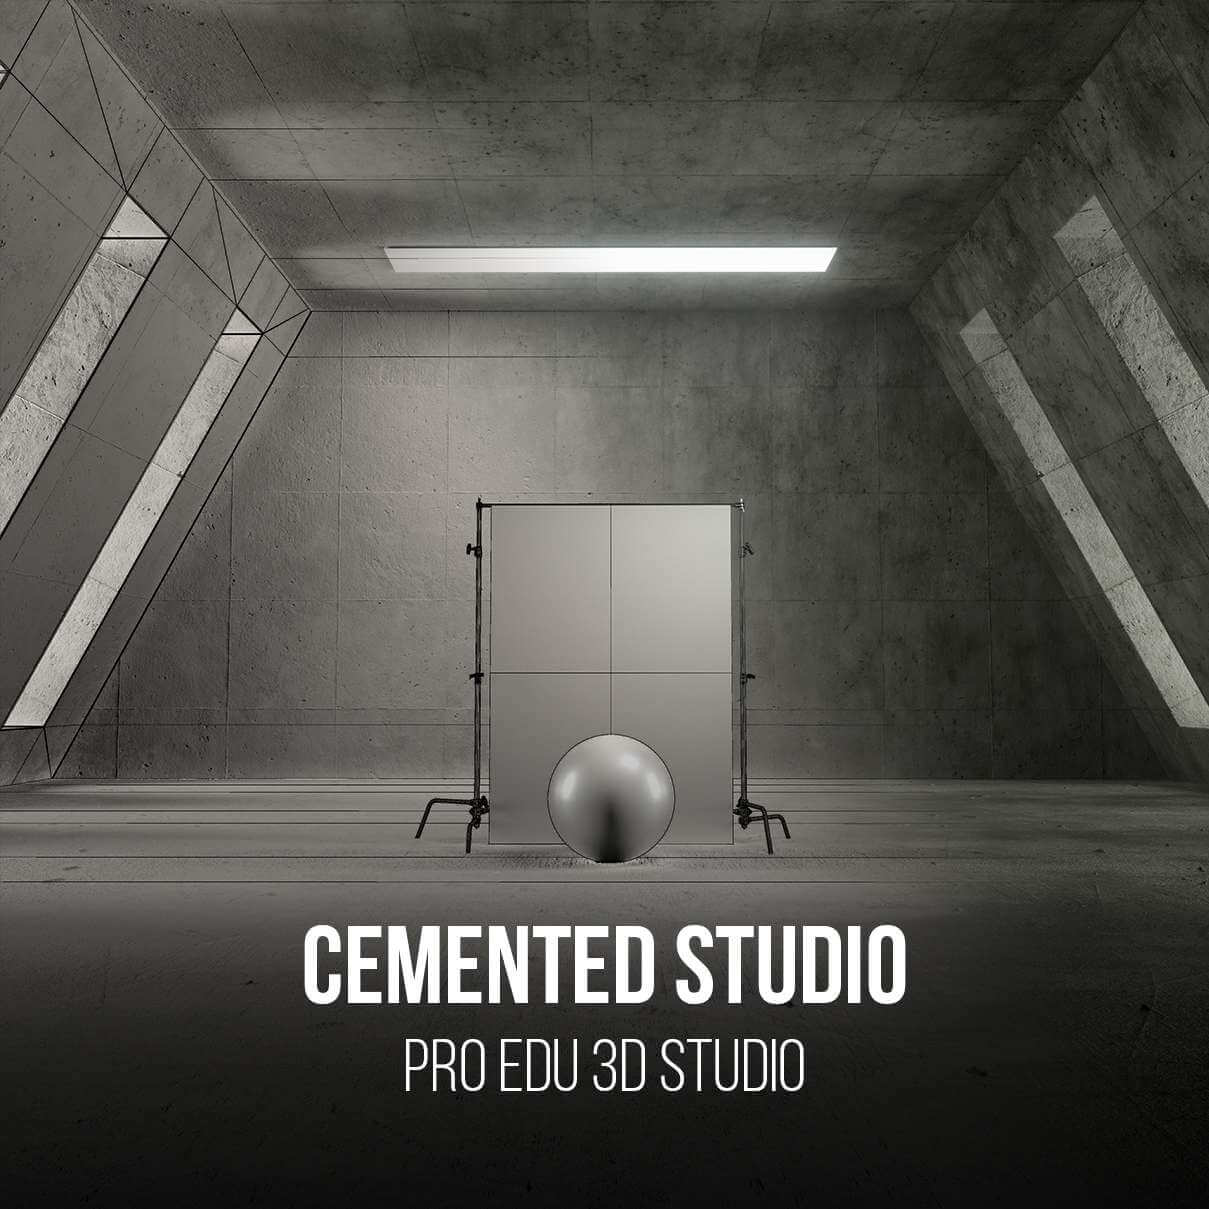 Cement Photography Studio 3D Model for Photoshop - PRO EDU PRO EDU PRO EDU